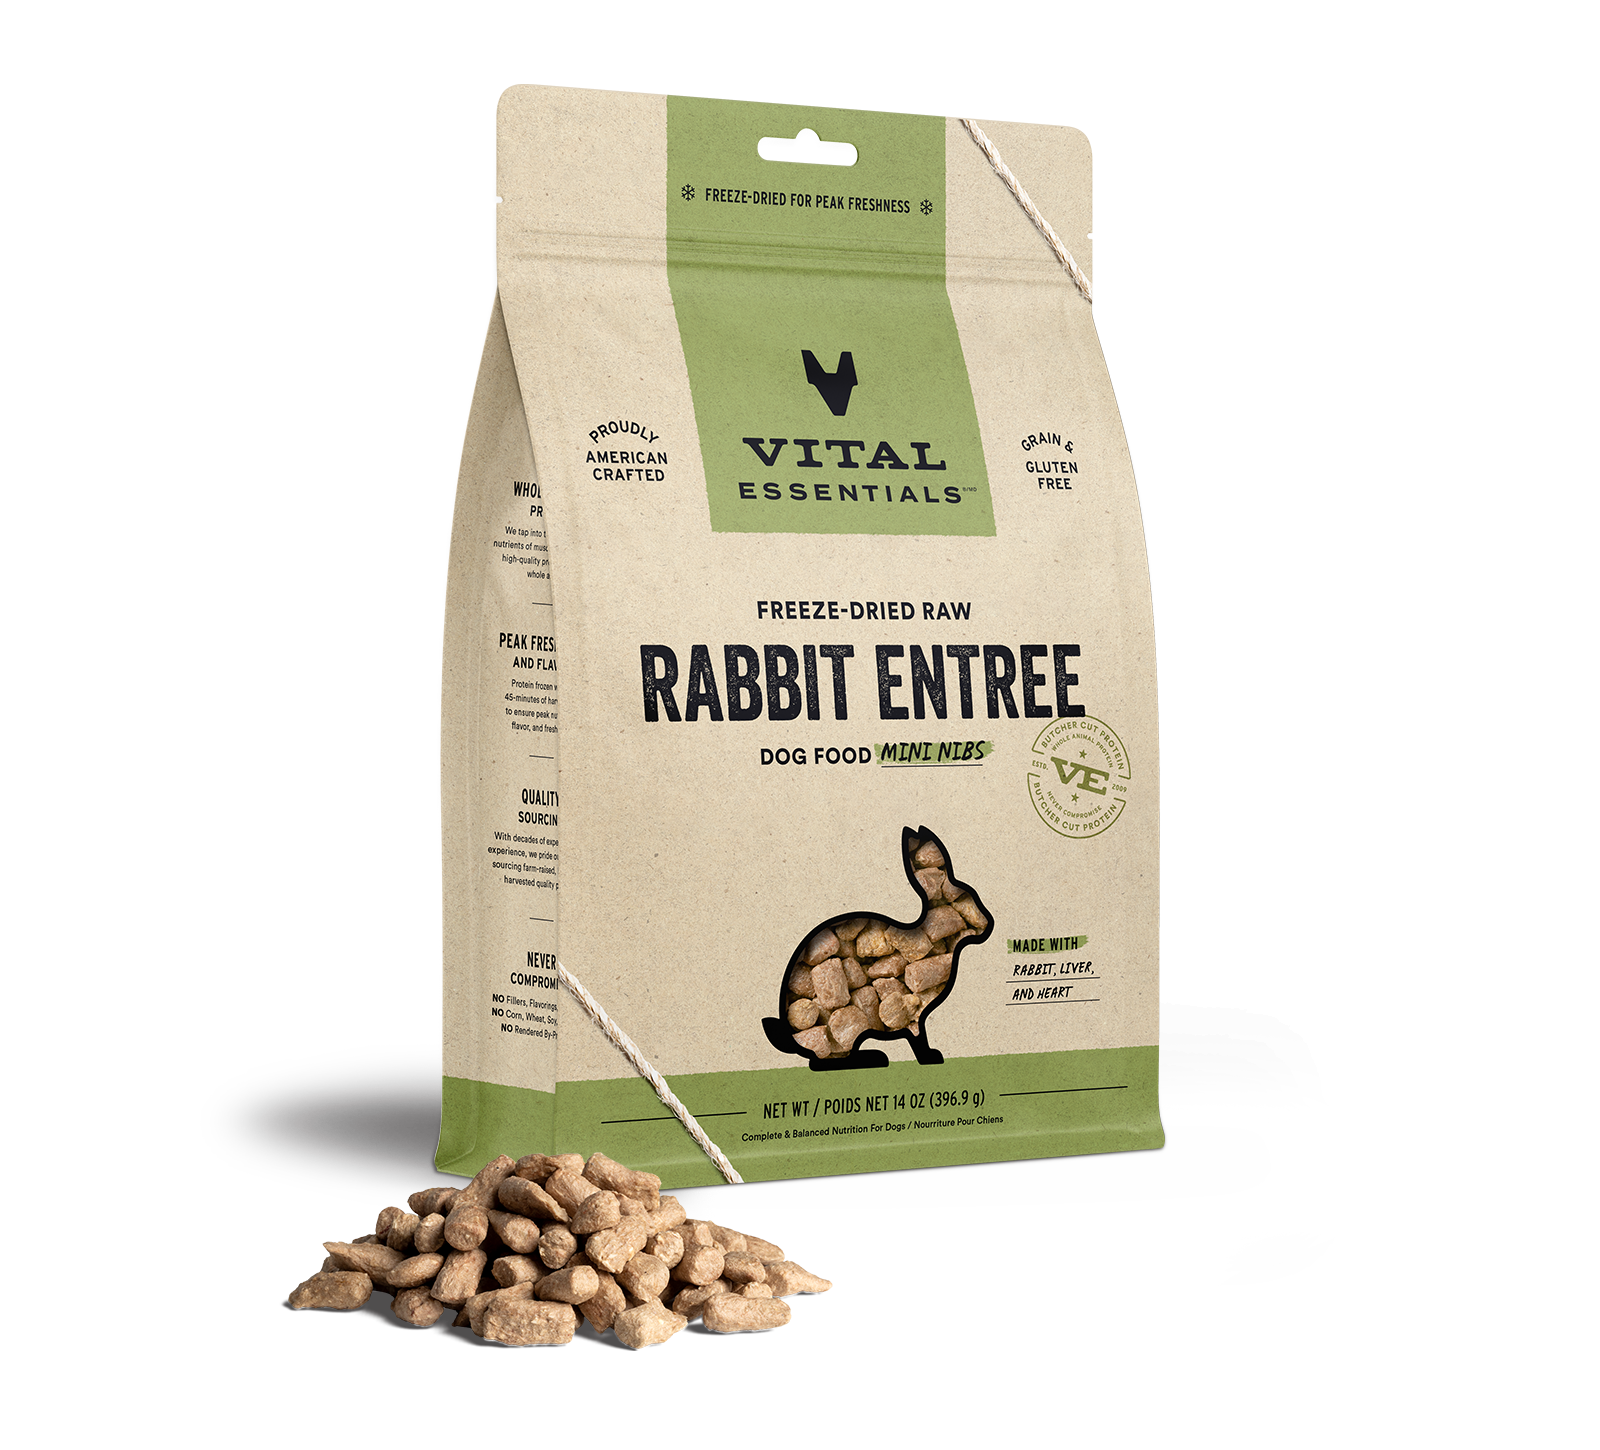 Vital Essentials Freeze-Dried Raw Rabbit Entree Dog Food Mini Nibs, 14 oz - Healing/First Aid